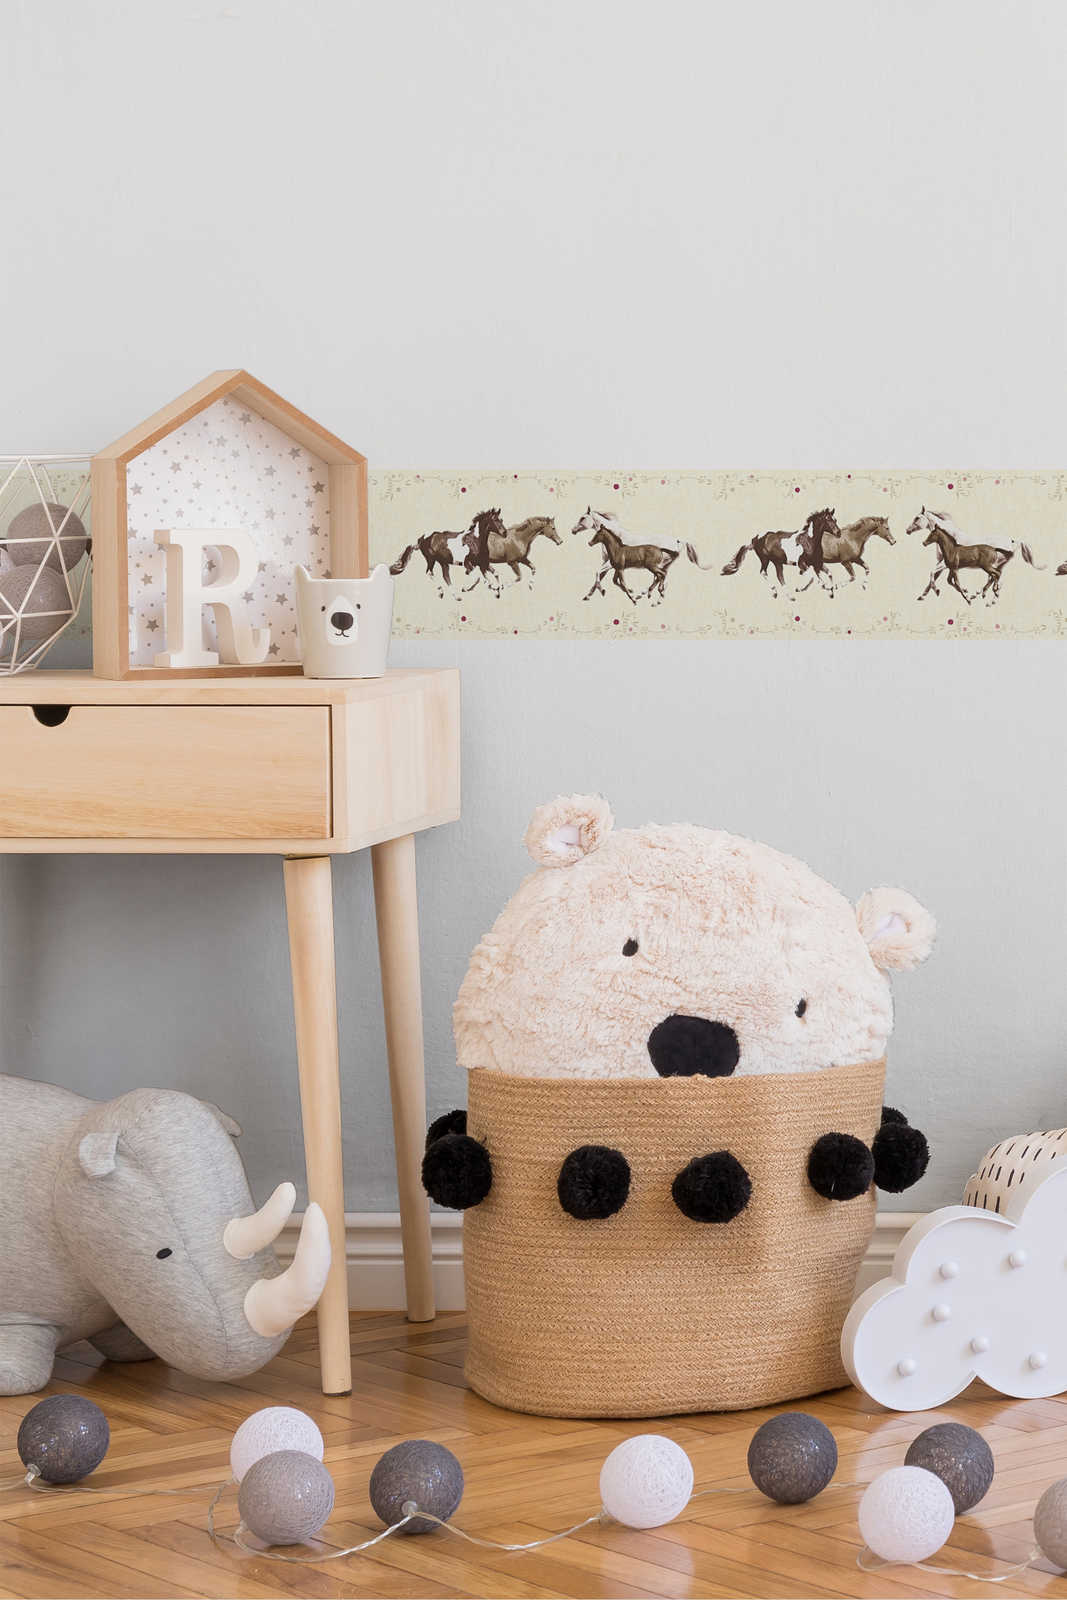             Kinderzimmer Tapetenborte mit Pferden – Bunt, Creme
        